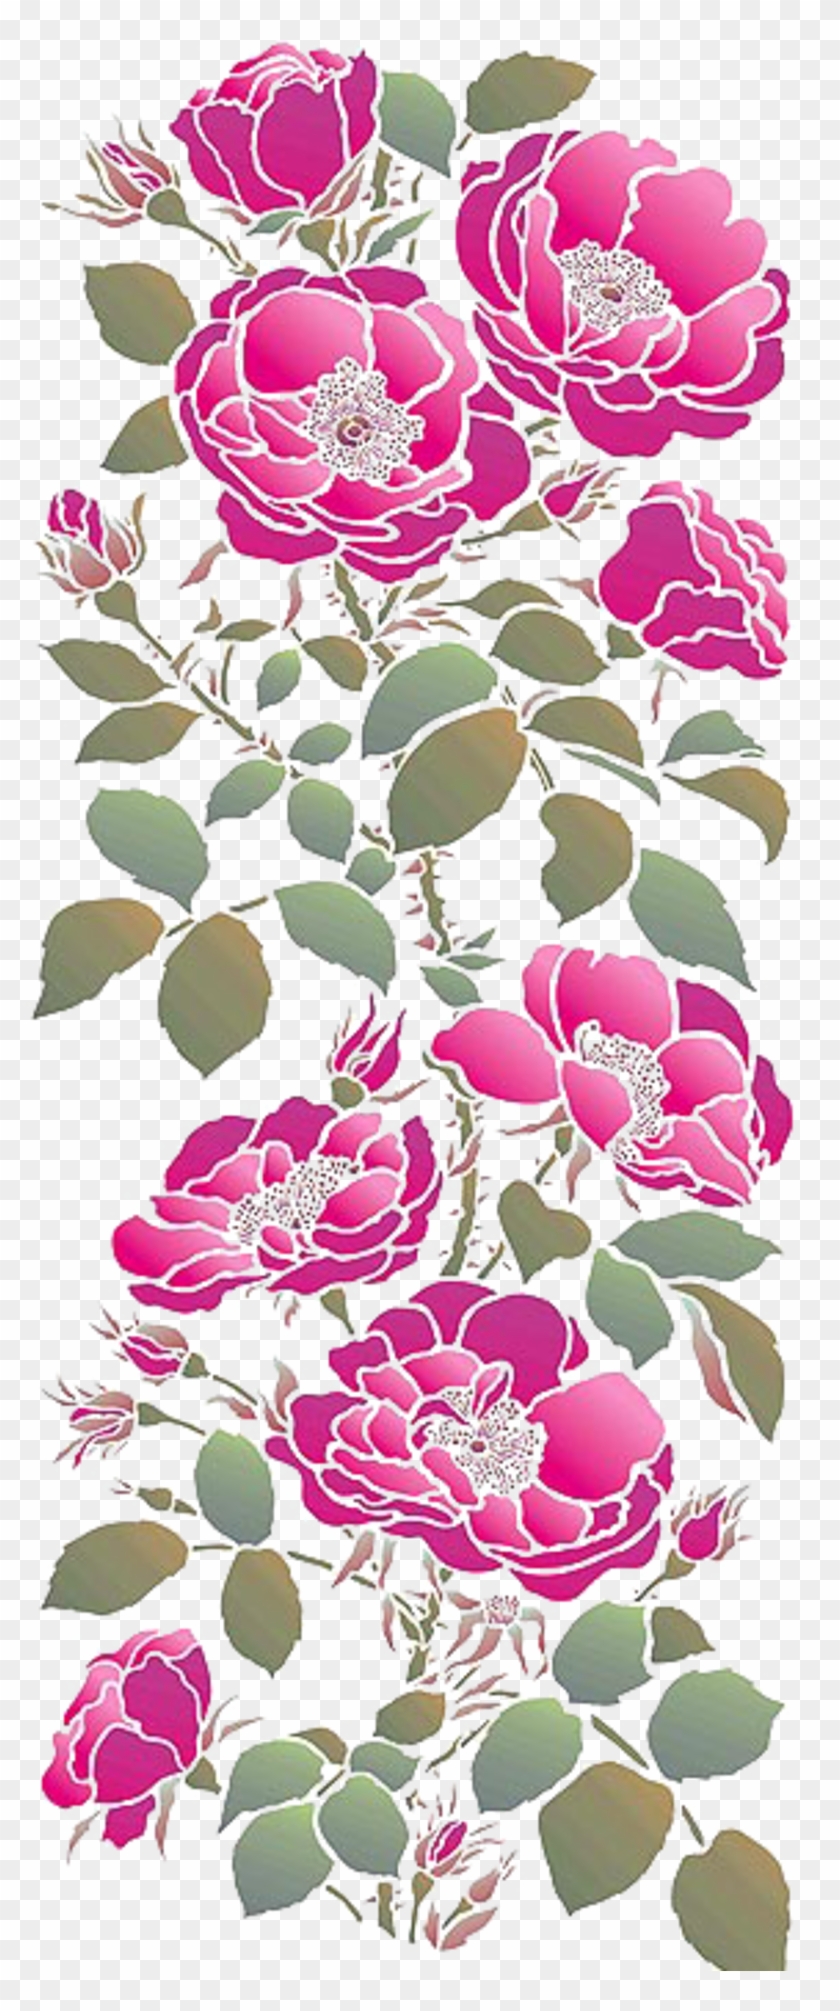 Stencil Rose Painting - Stencil Rose Painting #296816